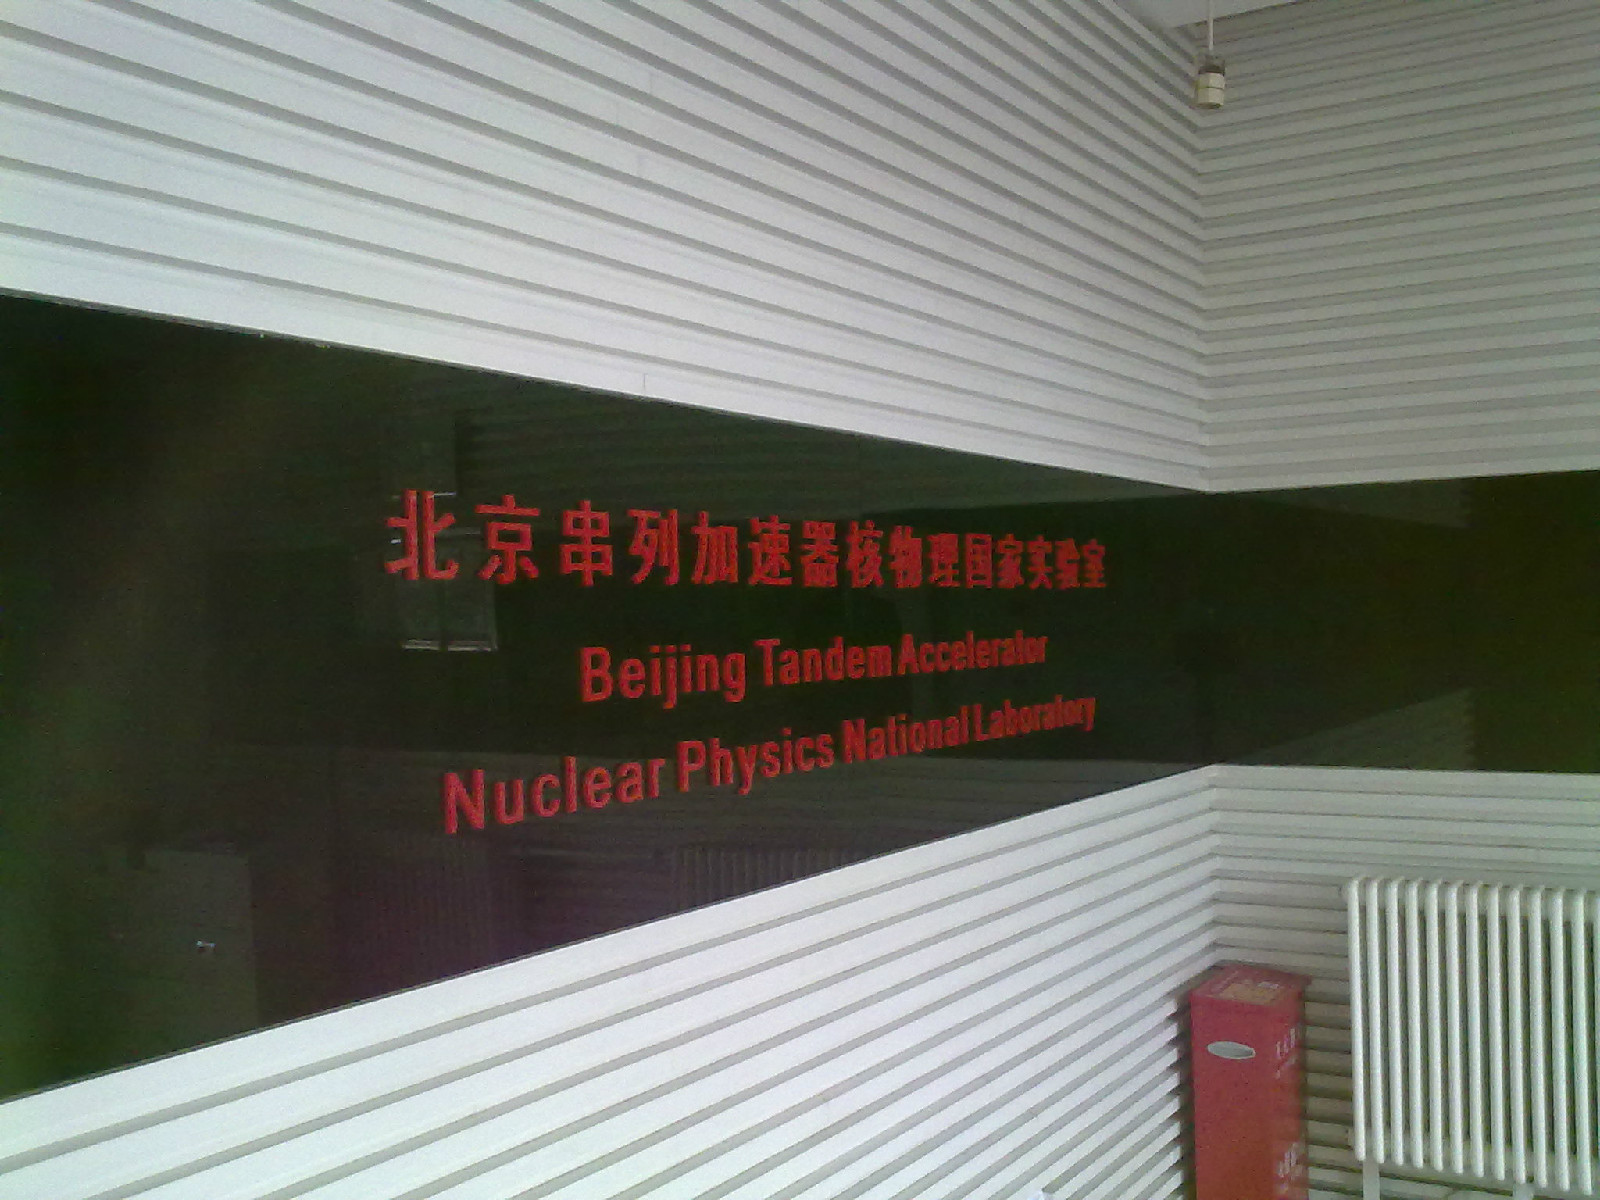 北京串列加速器核物理國家實驗室正門